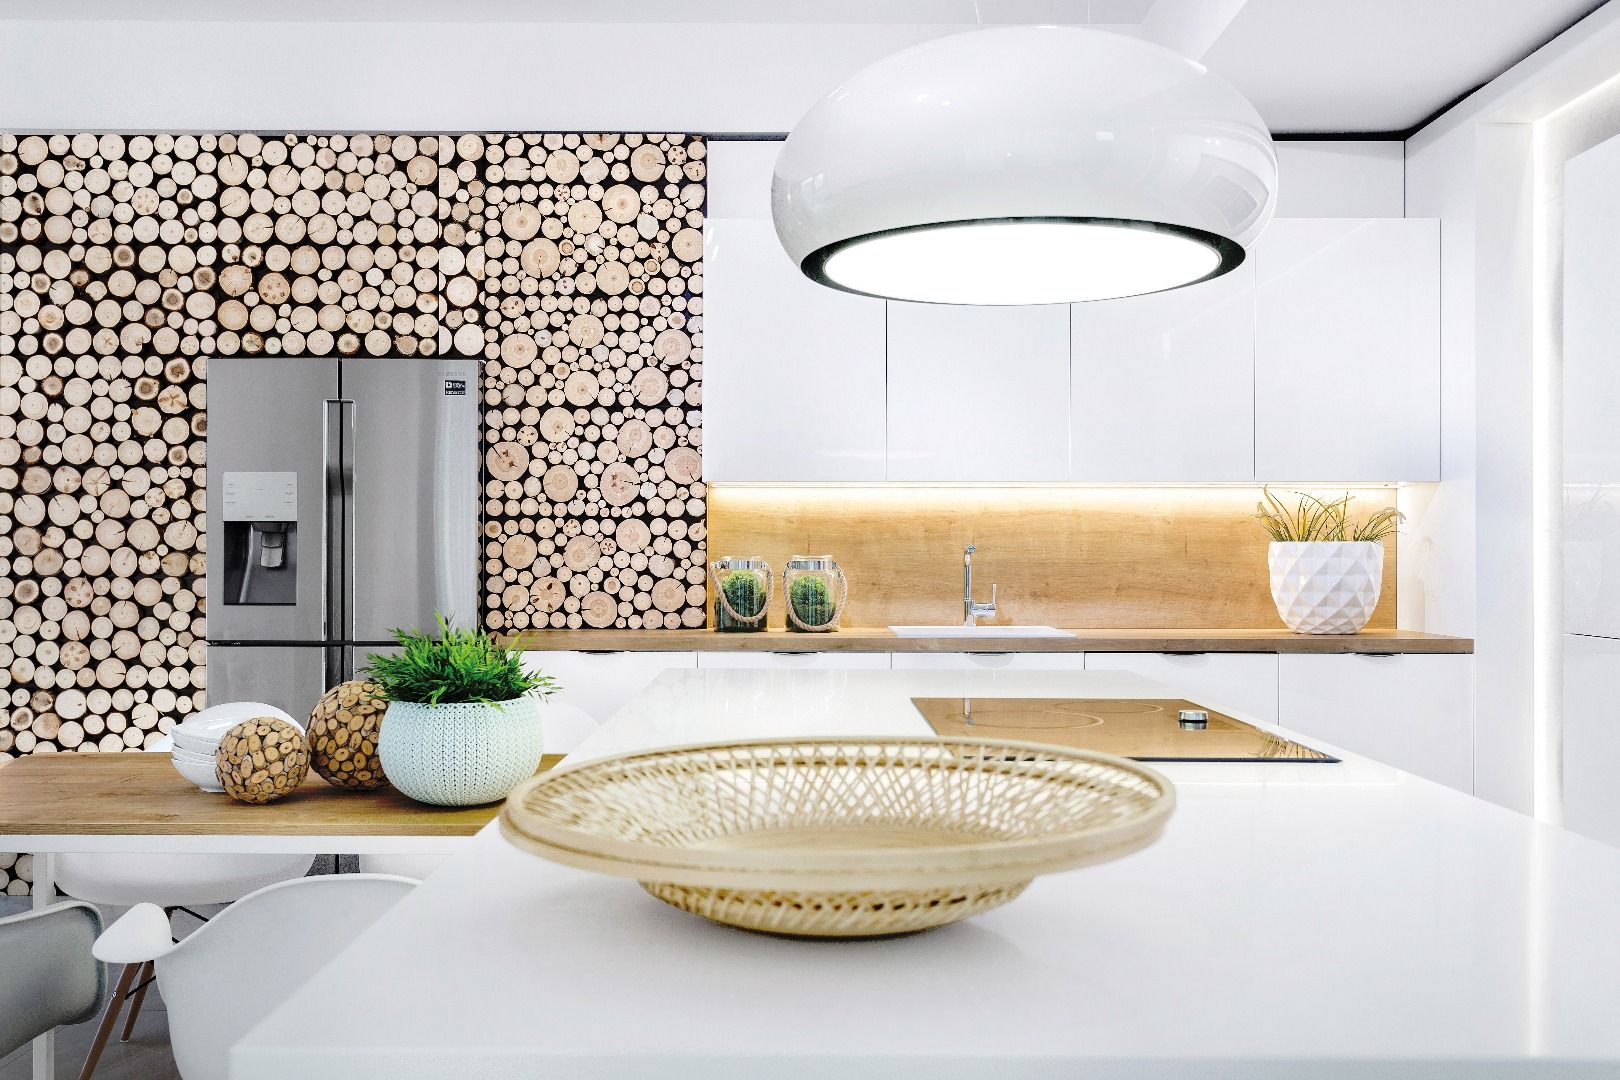 Drewniane elementy wprowadzą do wnętrza kuchni klimat naturalności. Fot. Studio Max Kuchnie/ Vigo